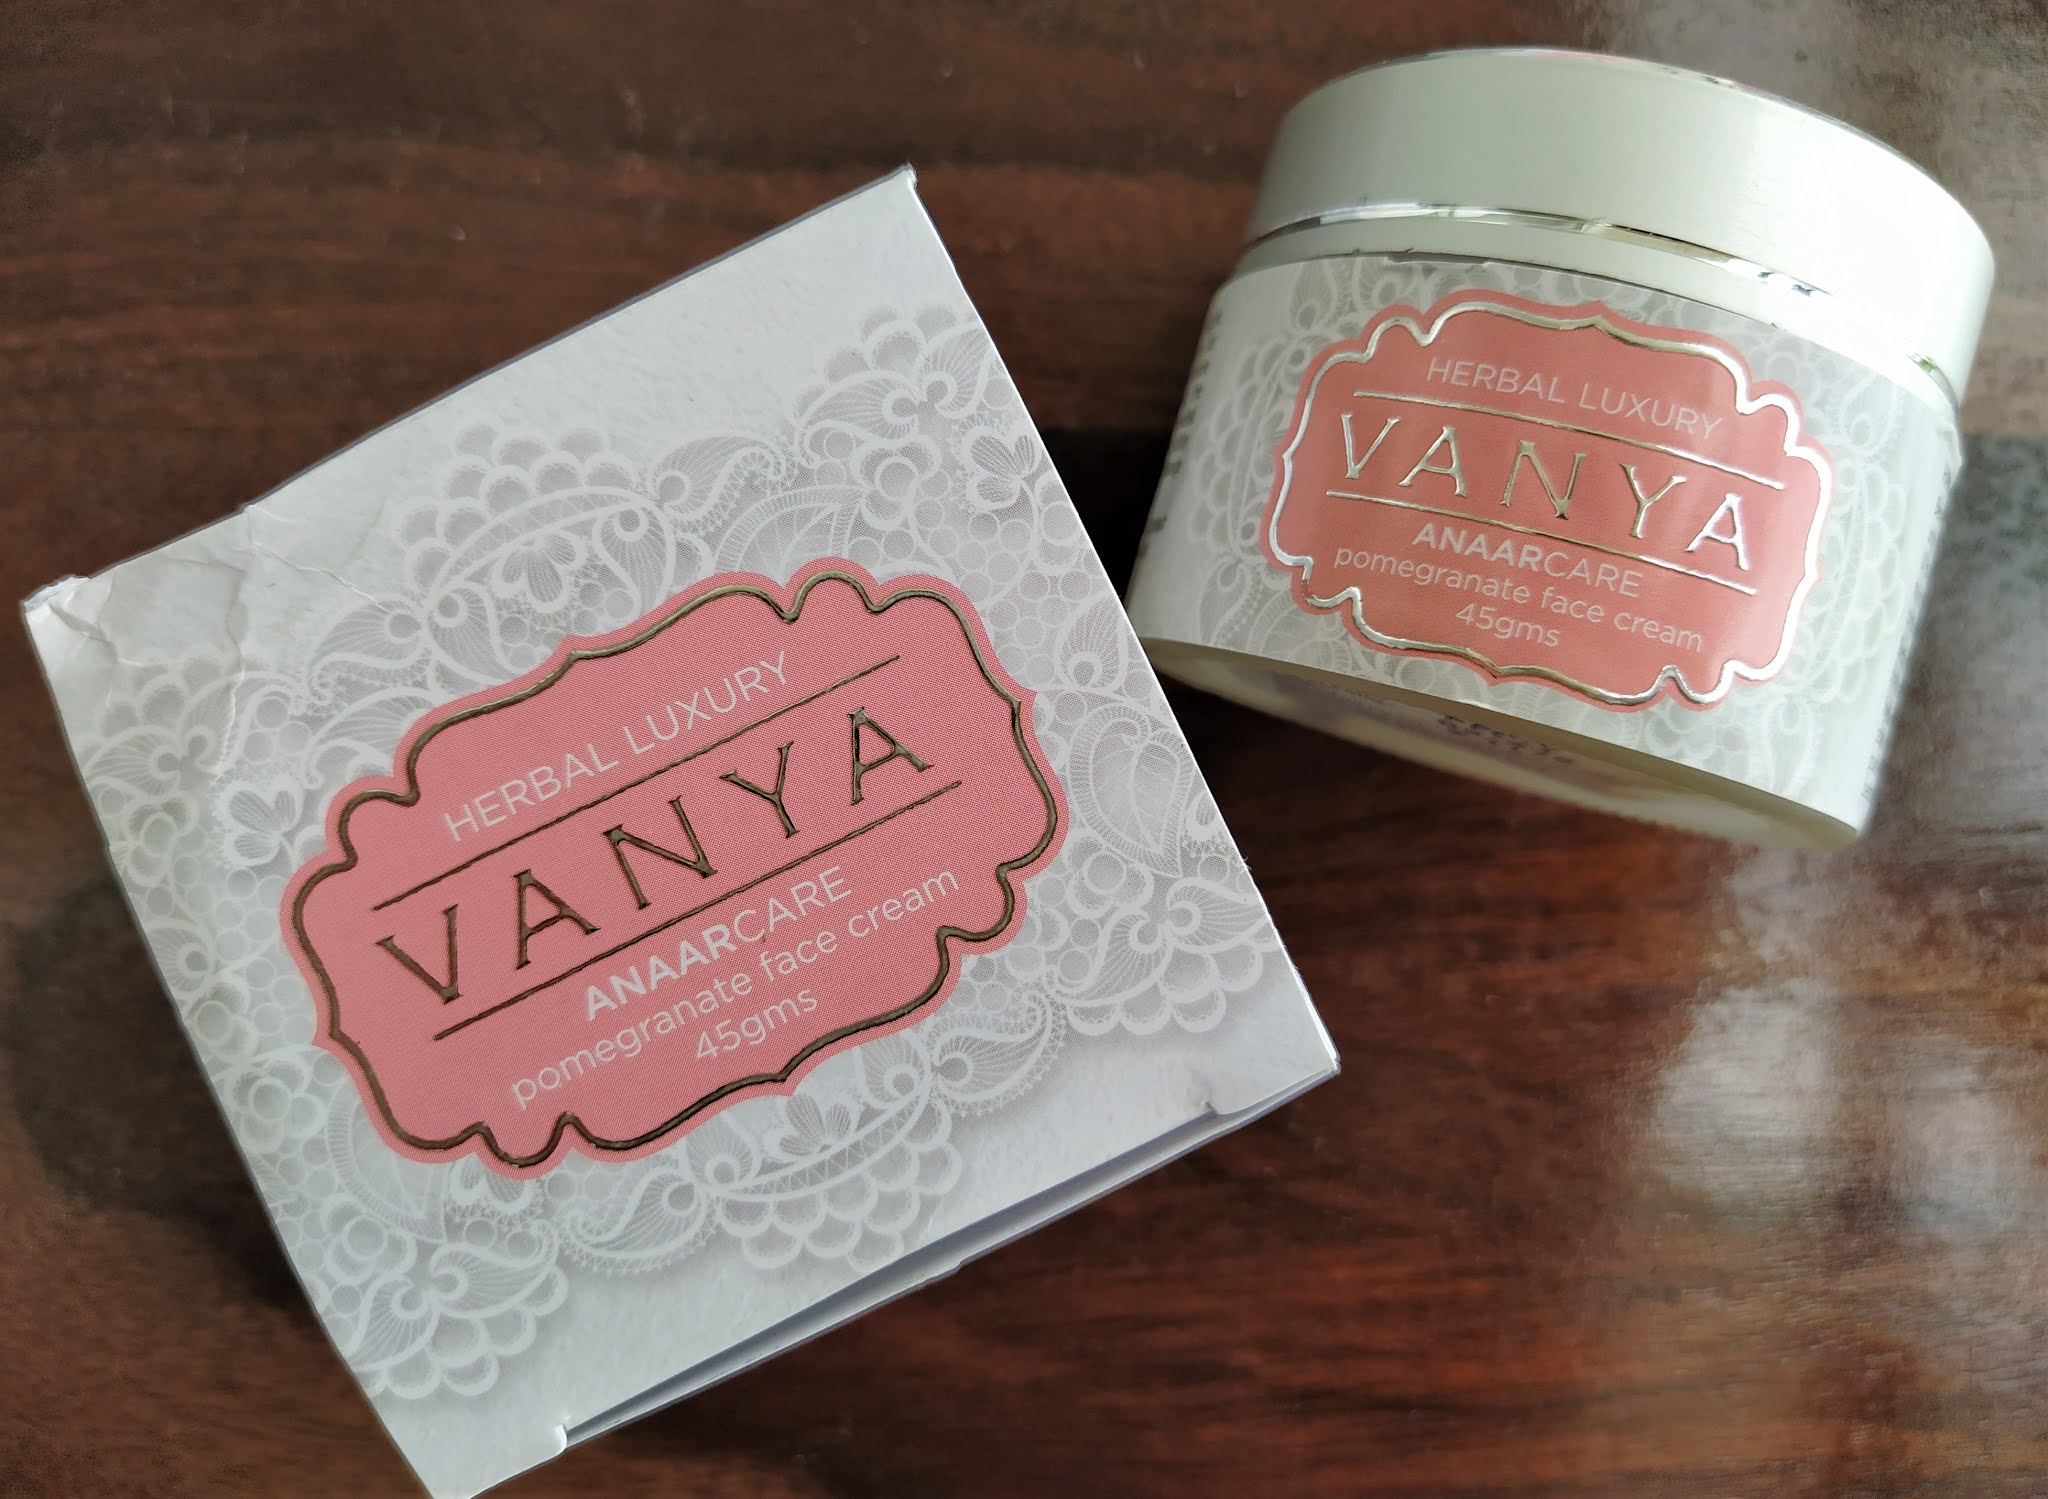 Vanya herbal face cream review